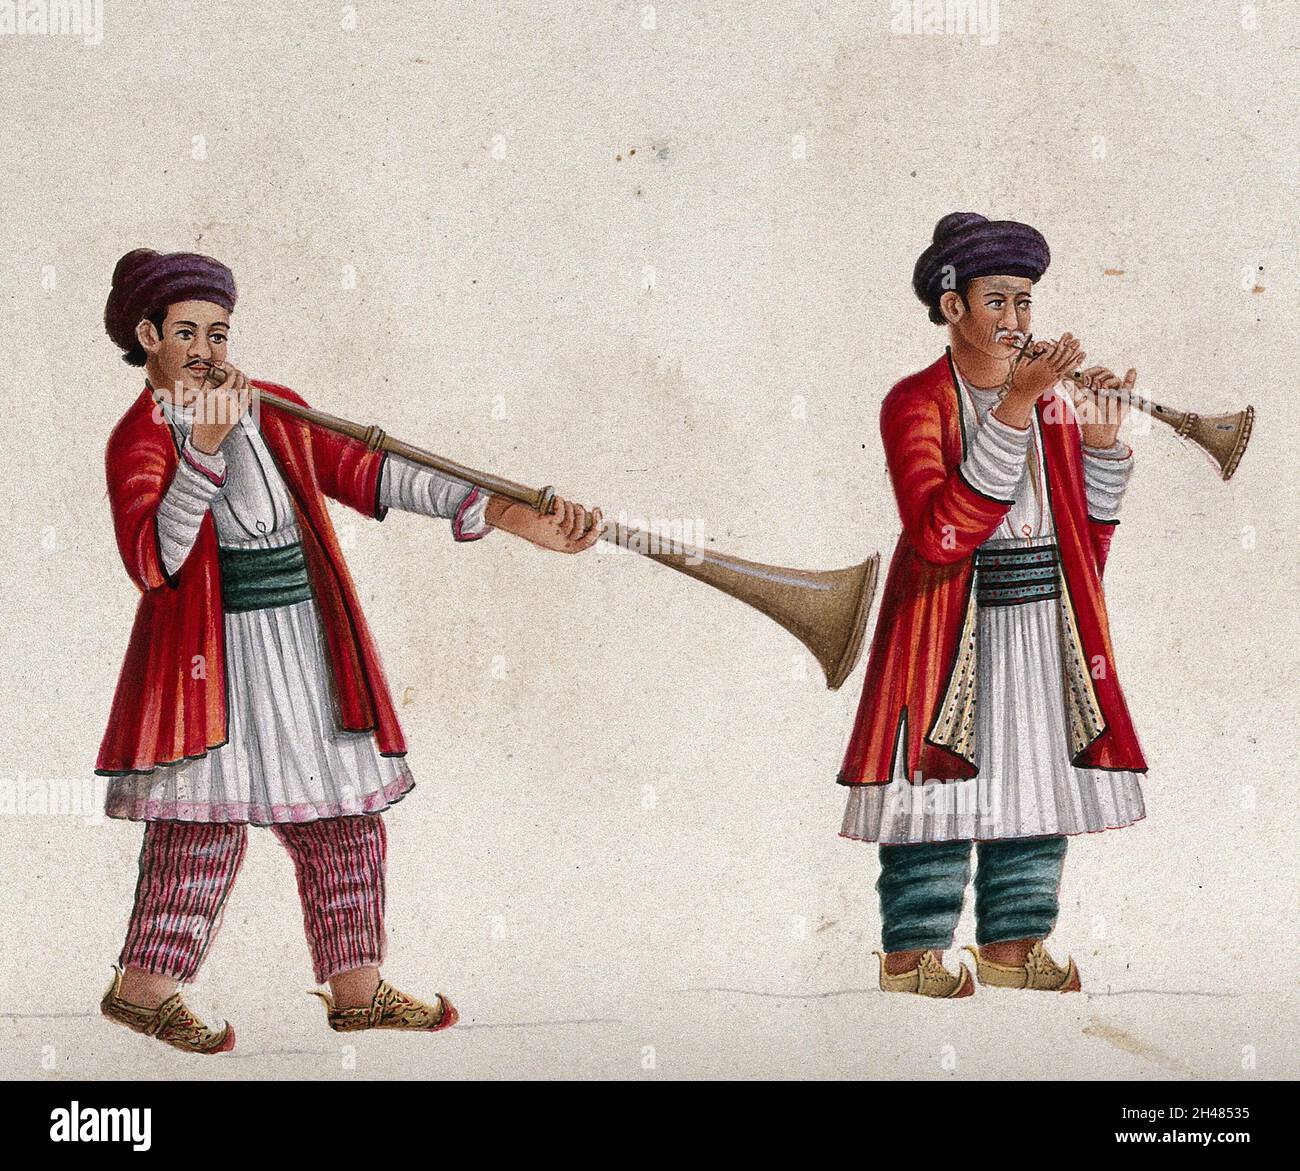 Zwei Musiker spielen das Shehnai (?), ein indisches Blasinstrument. Gouache-Gemälde eines indischen Künstlers. Stockfoto